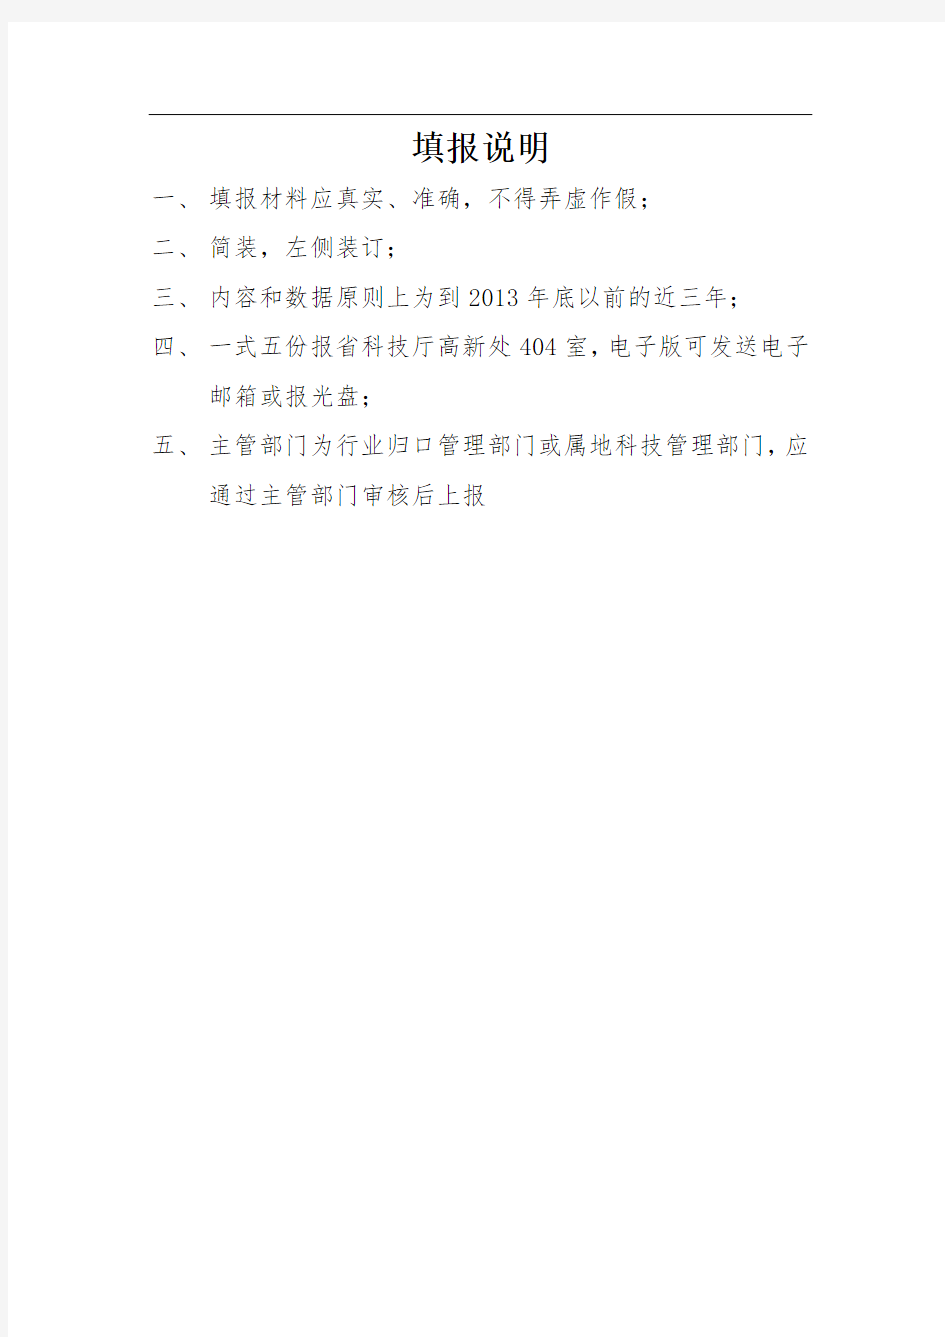 四川省工程技术研究中心自查报告编写格式